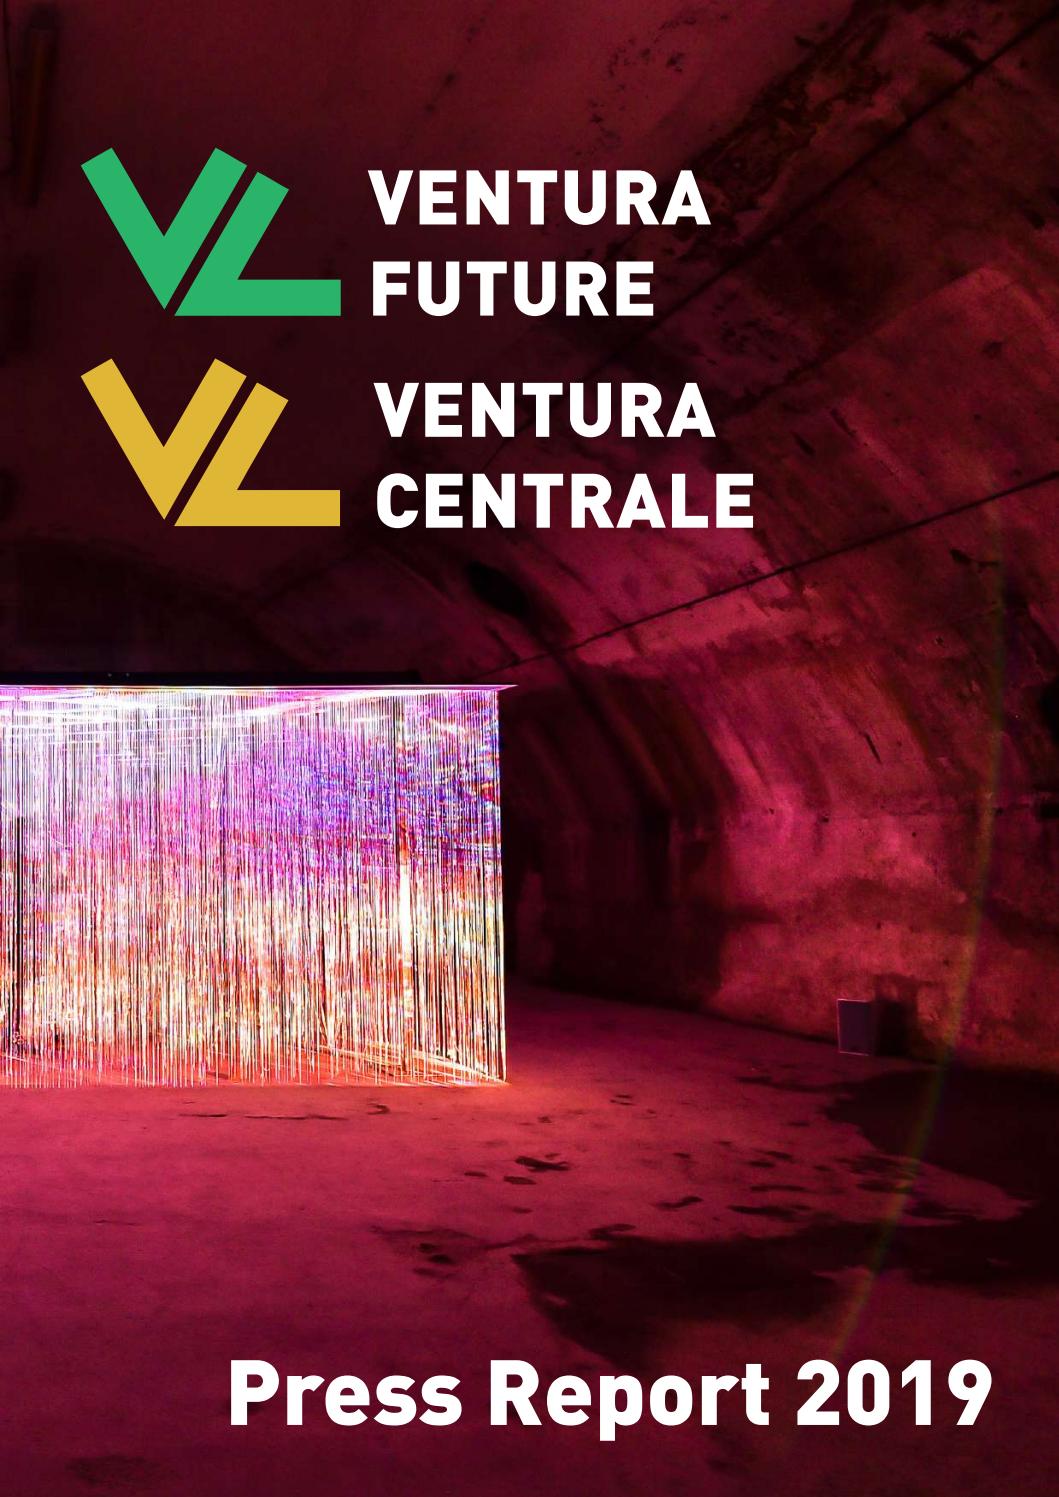 Ventura Future Ventura Centrale Press Report 2019 By Ventura Projects Issuu